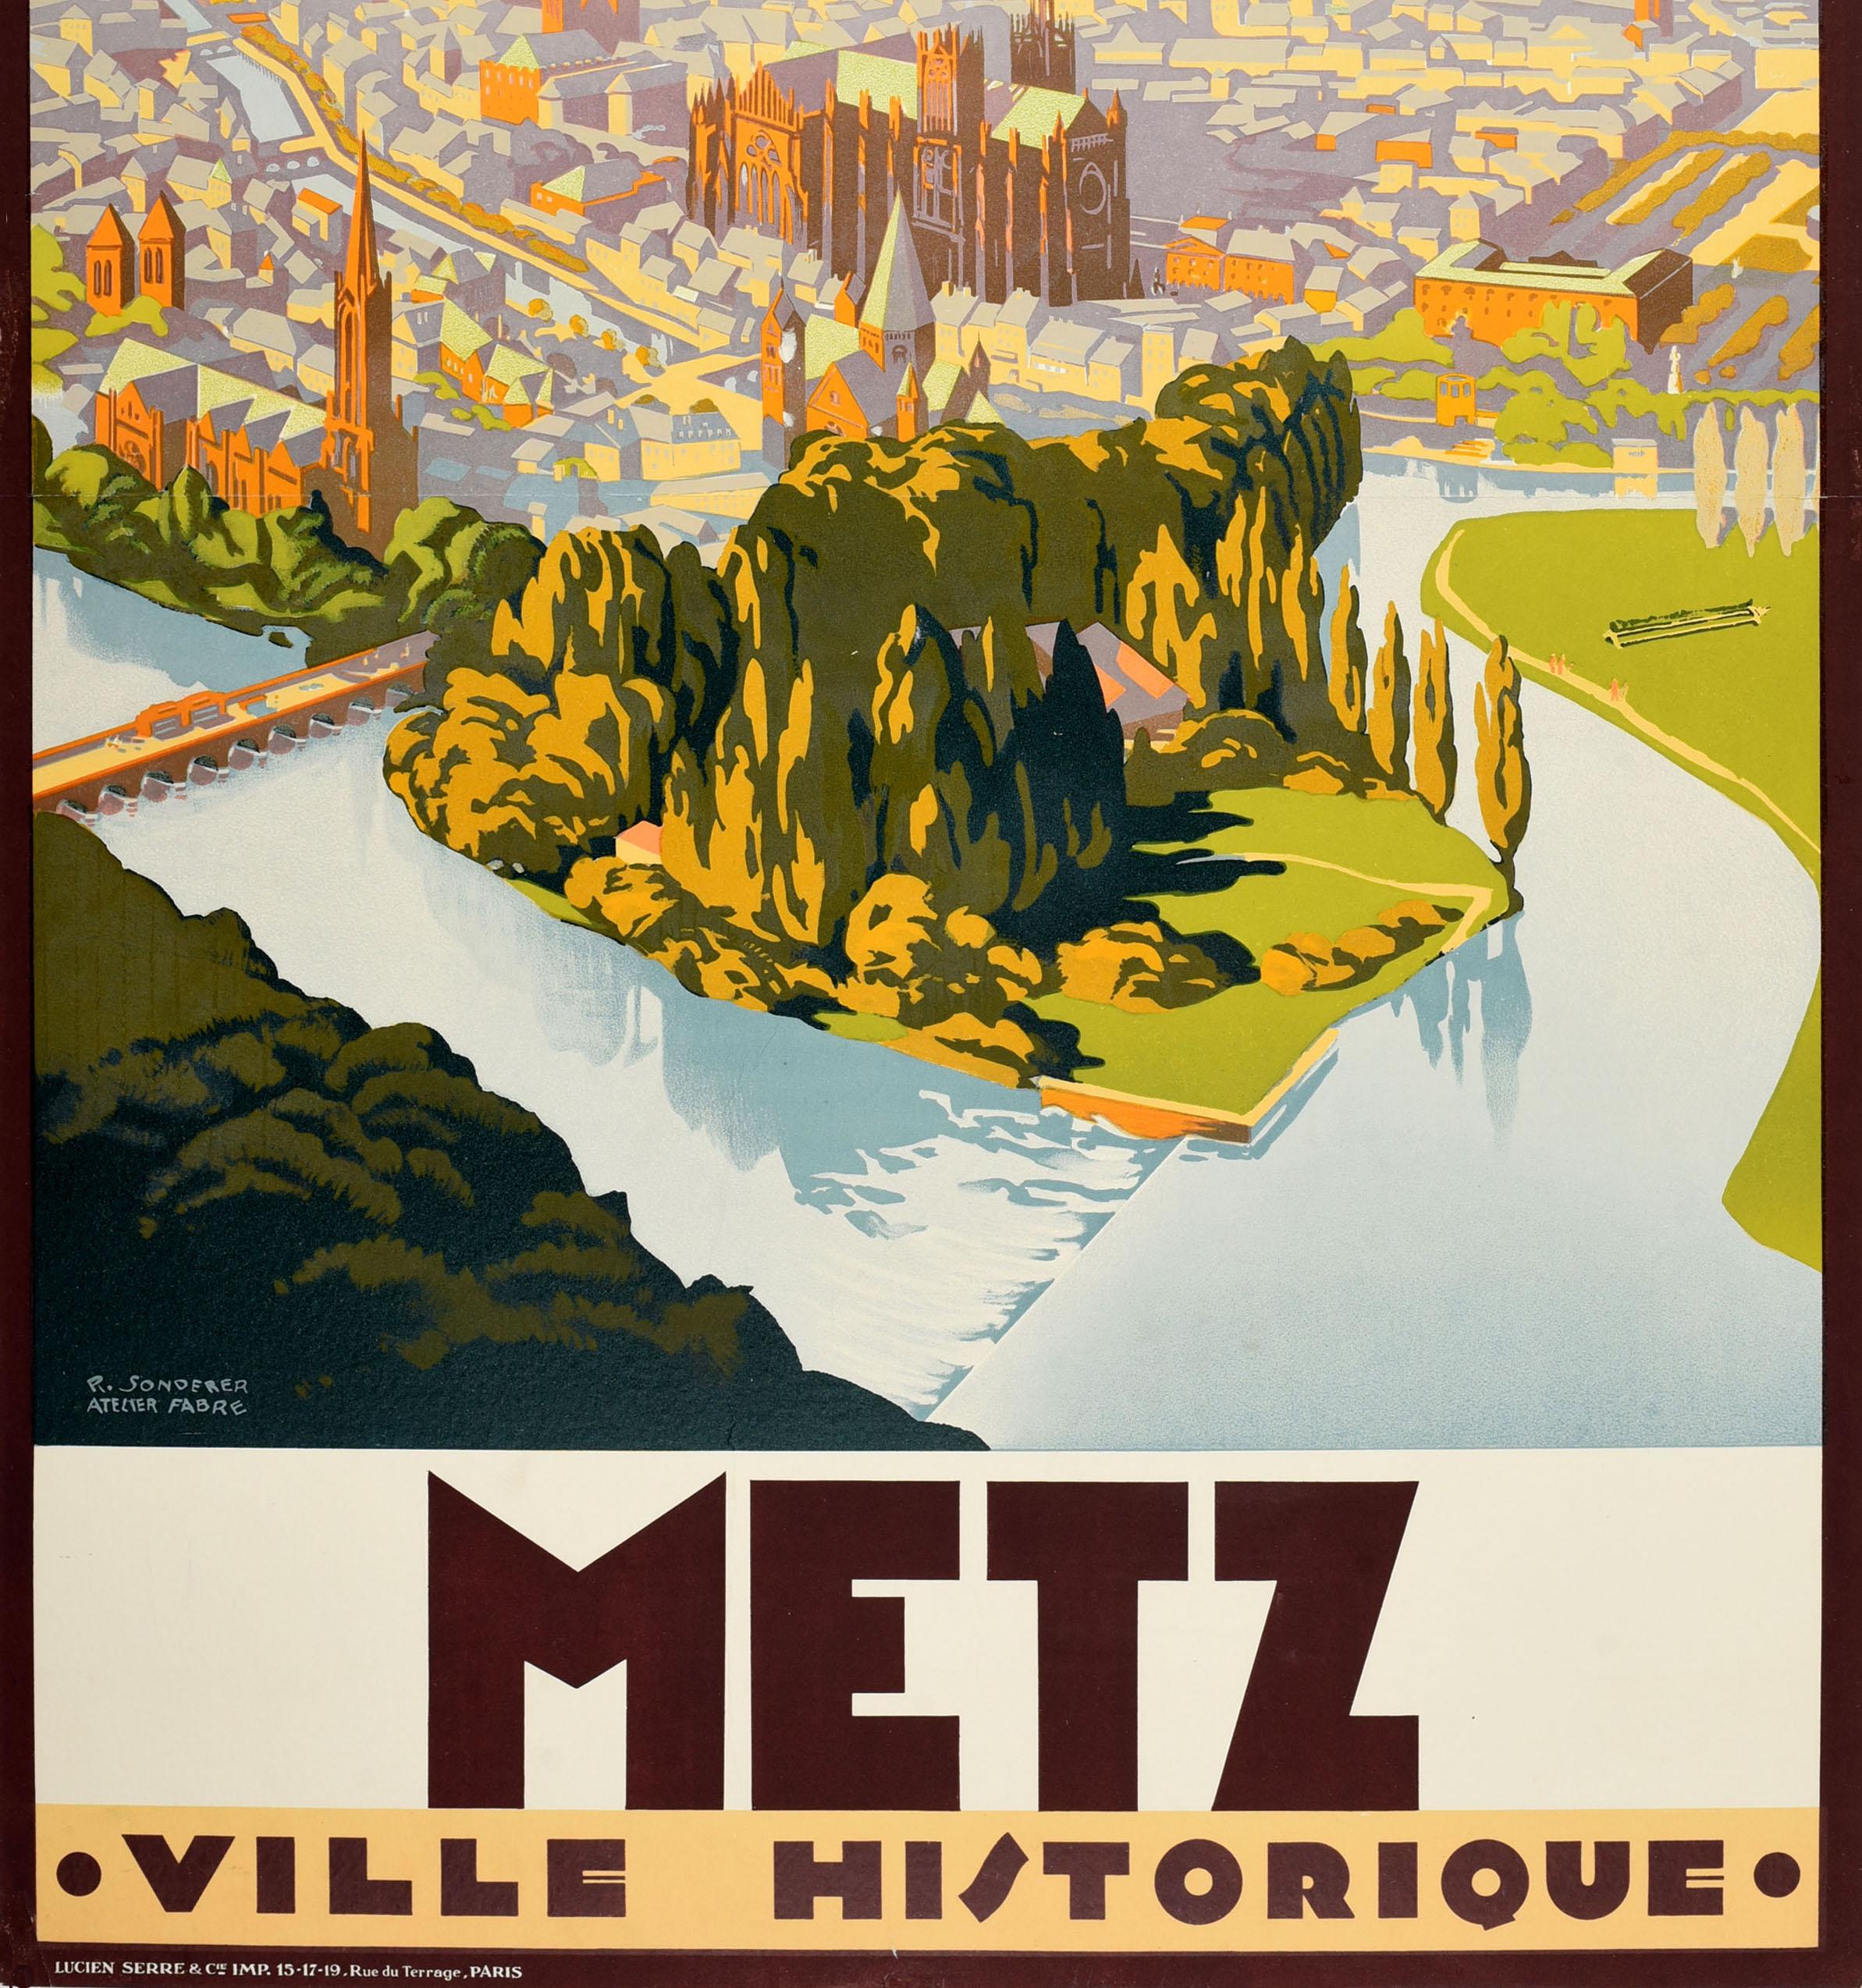 Originales französisches Eisenbahn-Reiseplakat für Metz Historic City - Chemins de Fer d'Alsace et de Lorraine Ville Historique 9 mit einer atemberaubenden Ansicht der alten Stadt mit Bäumen und verschiedenen alten Gebäuden, darunter Kirchtürme und